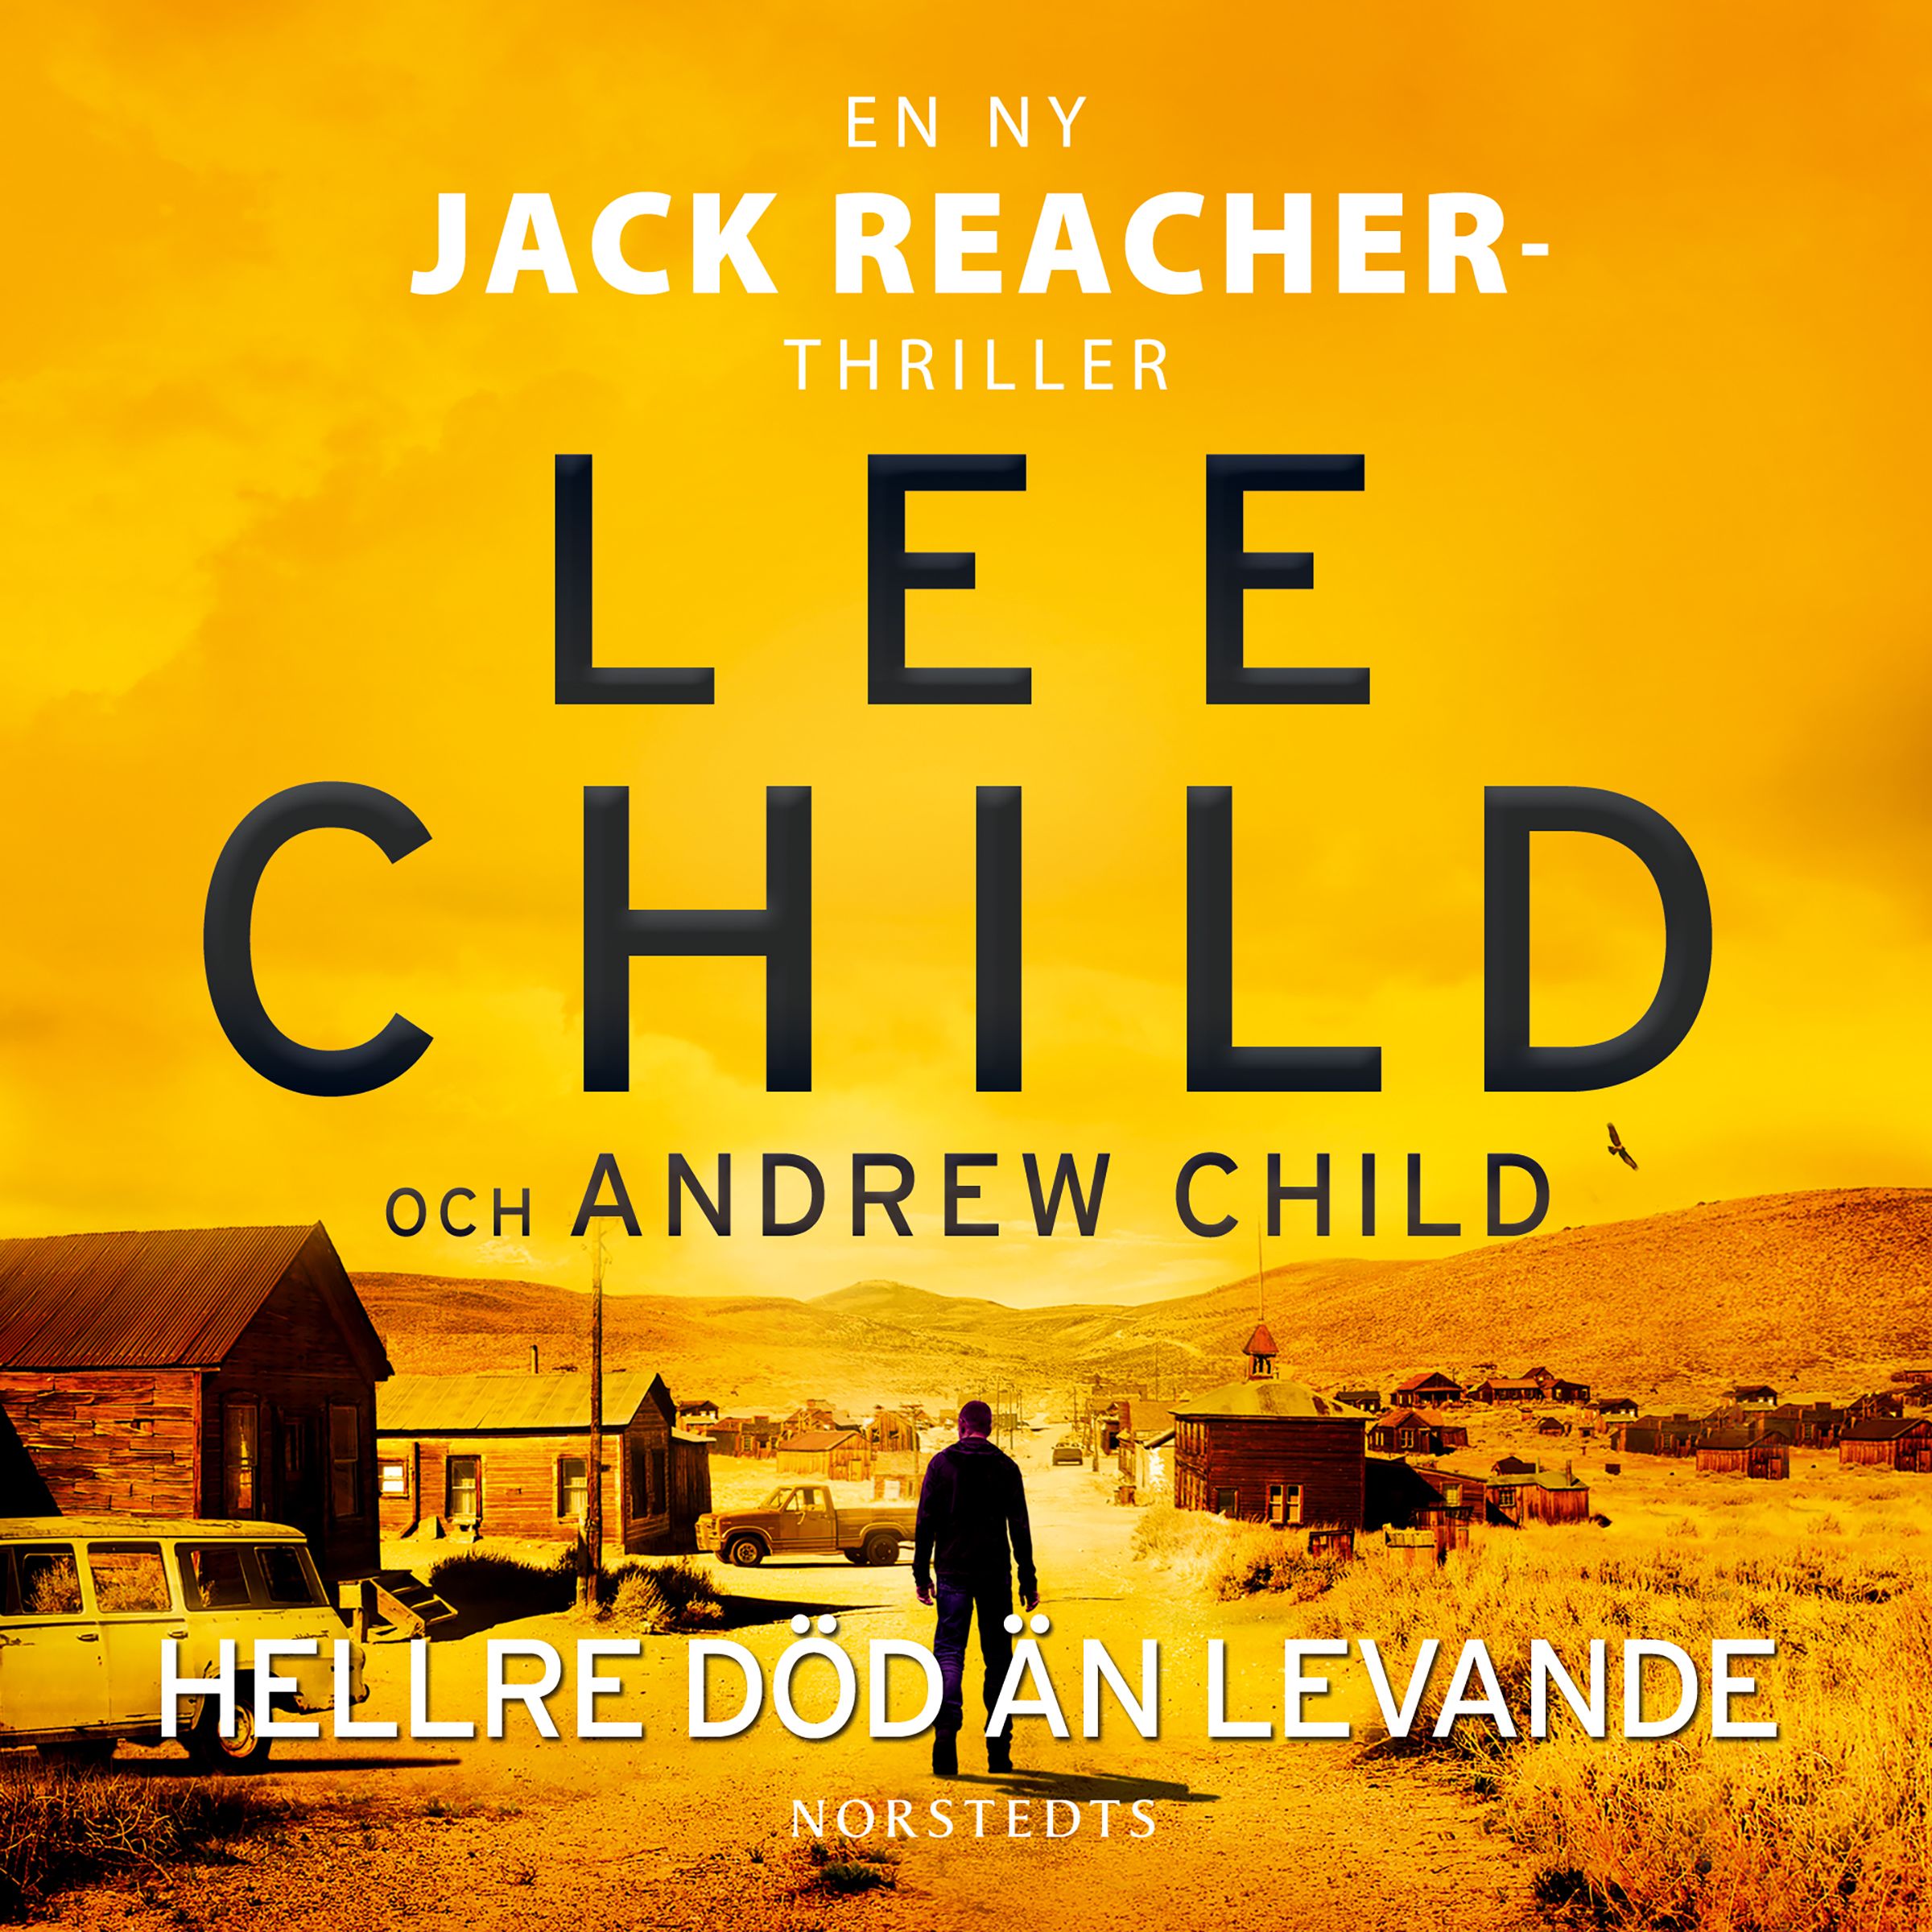 Hellre död än levande, audiobook by Lee Child, Andrew Child